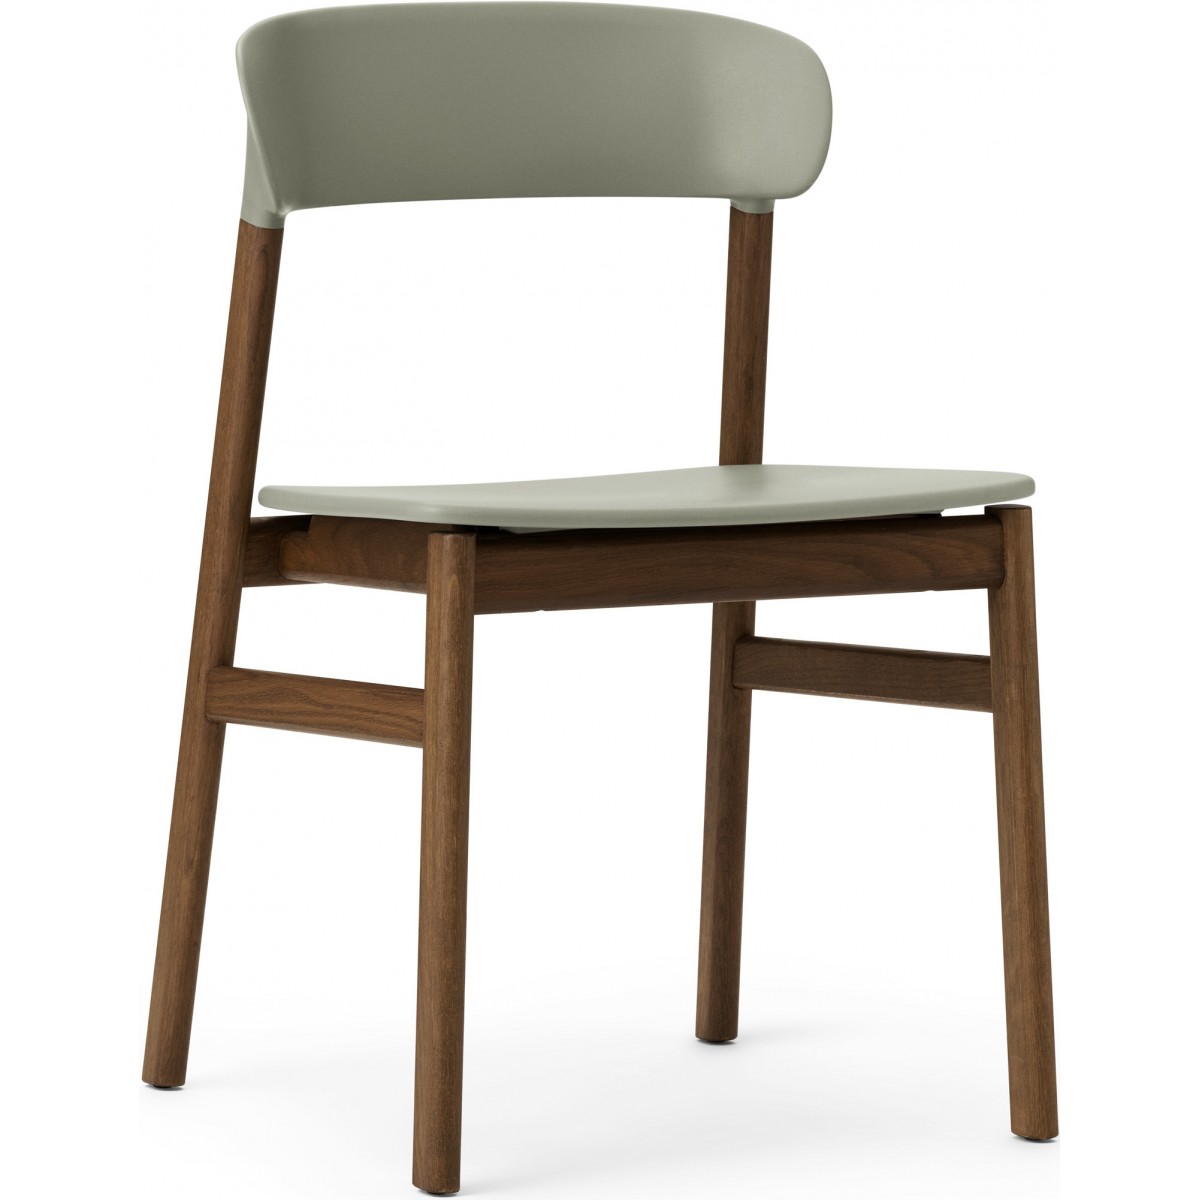 dusty green / smoked oak - Herit chair